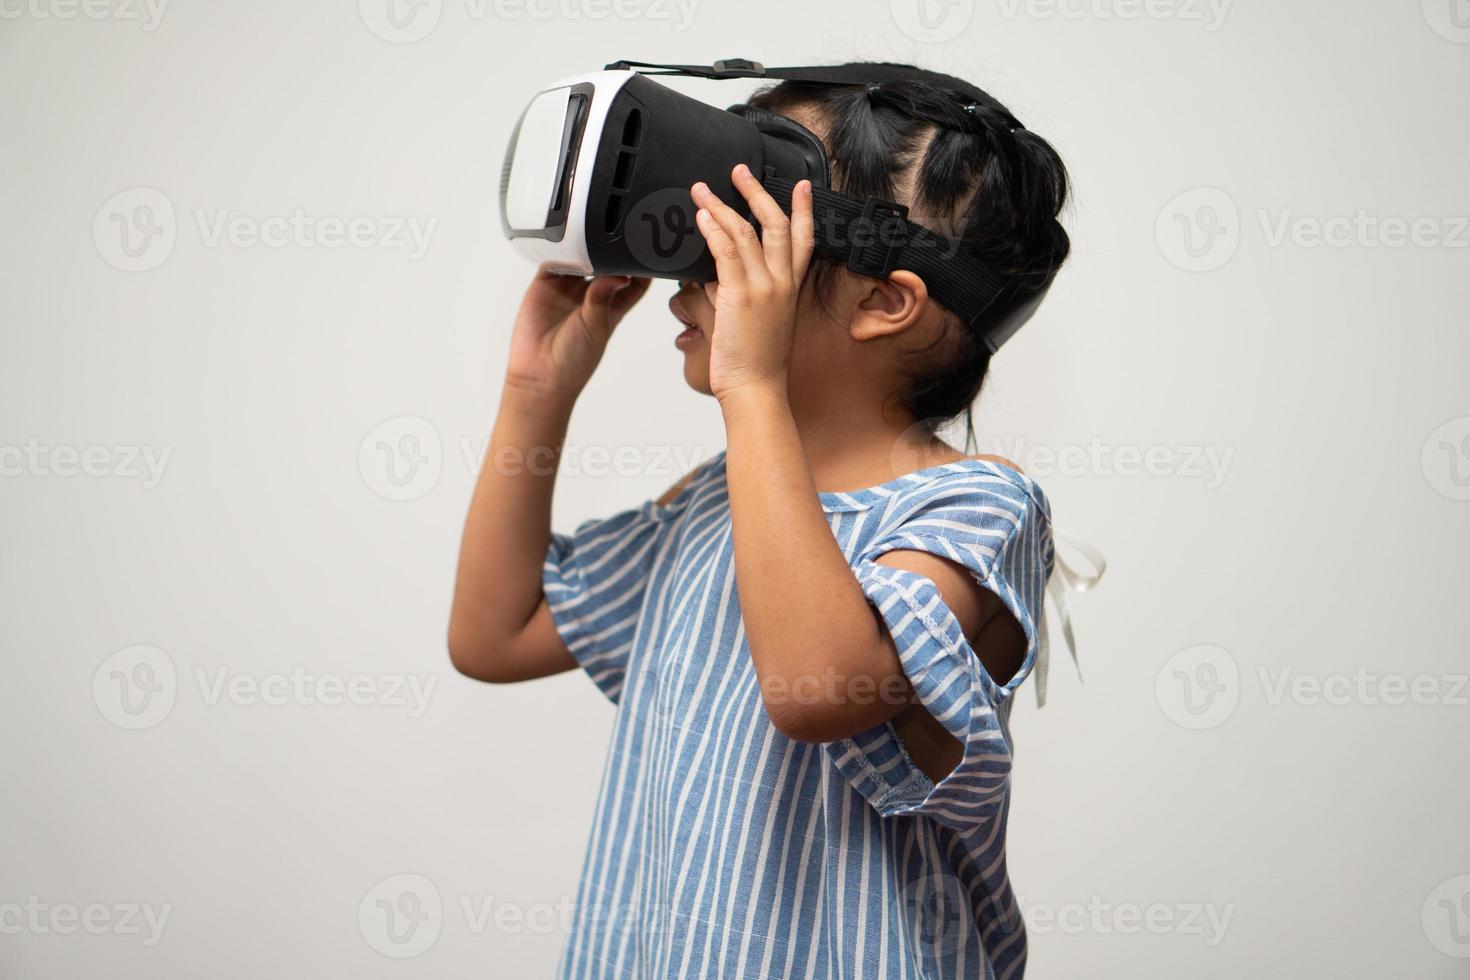 la pequeña niña asiática con casco de realidad virtual es emocionante para nuevas experiencias. concepto de tecnología de gadgets 3d y juegos de gadgets del mundo virtual y educación en línea en el futuro foto